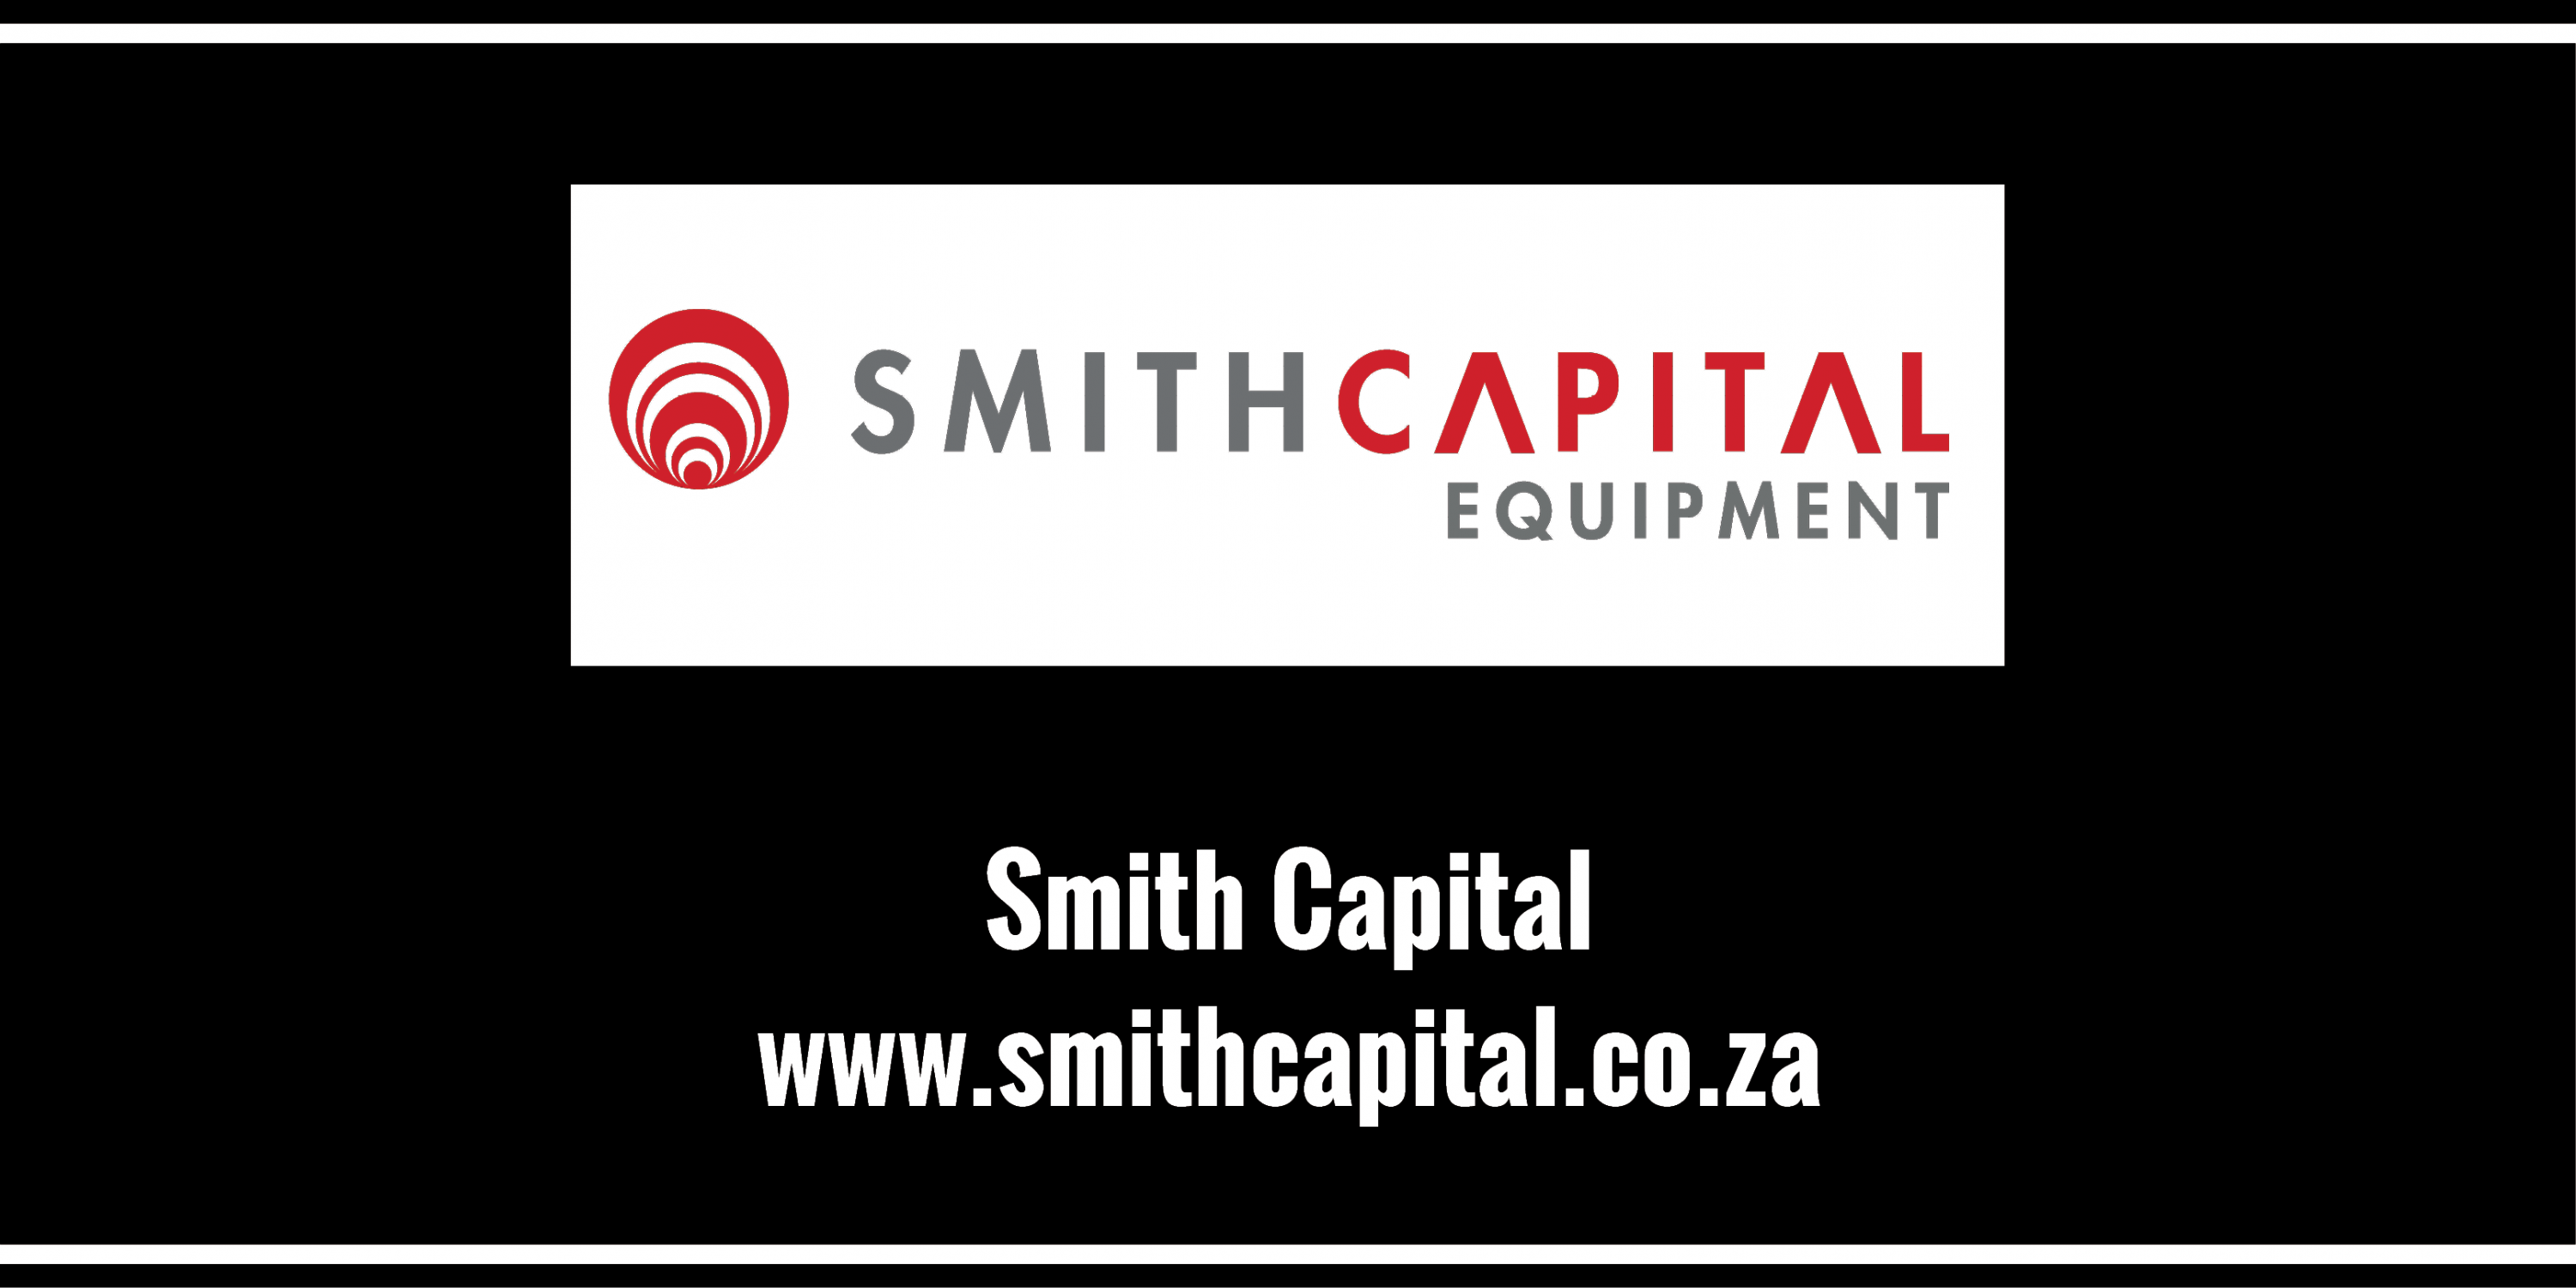 Smith Capital